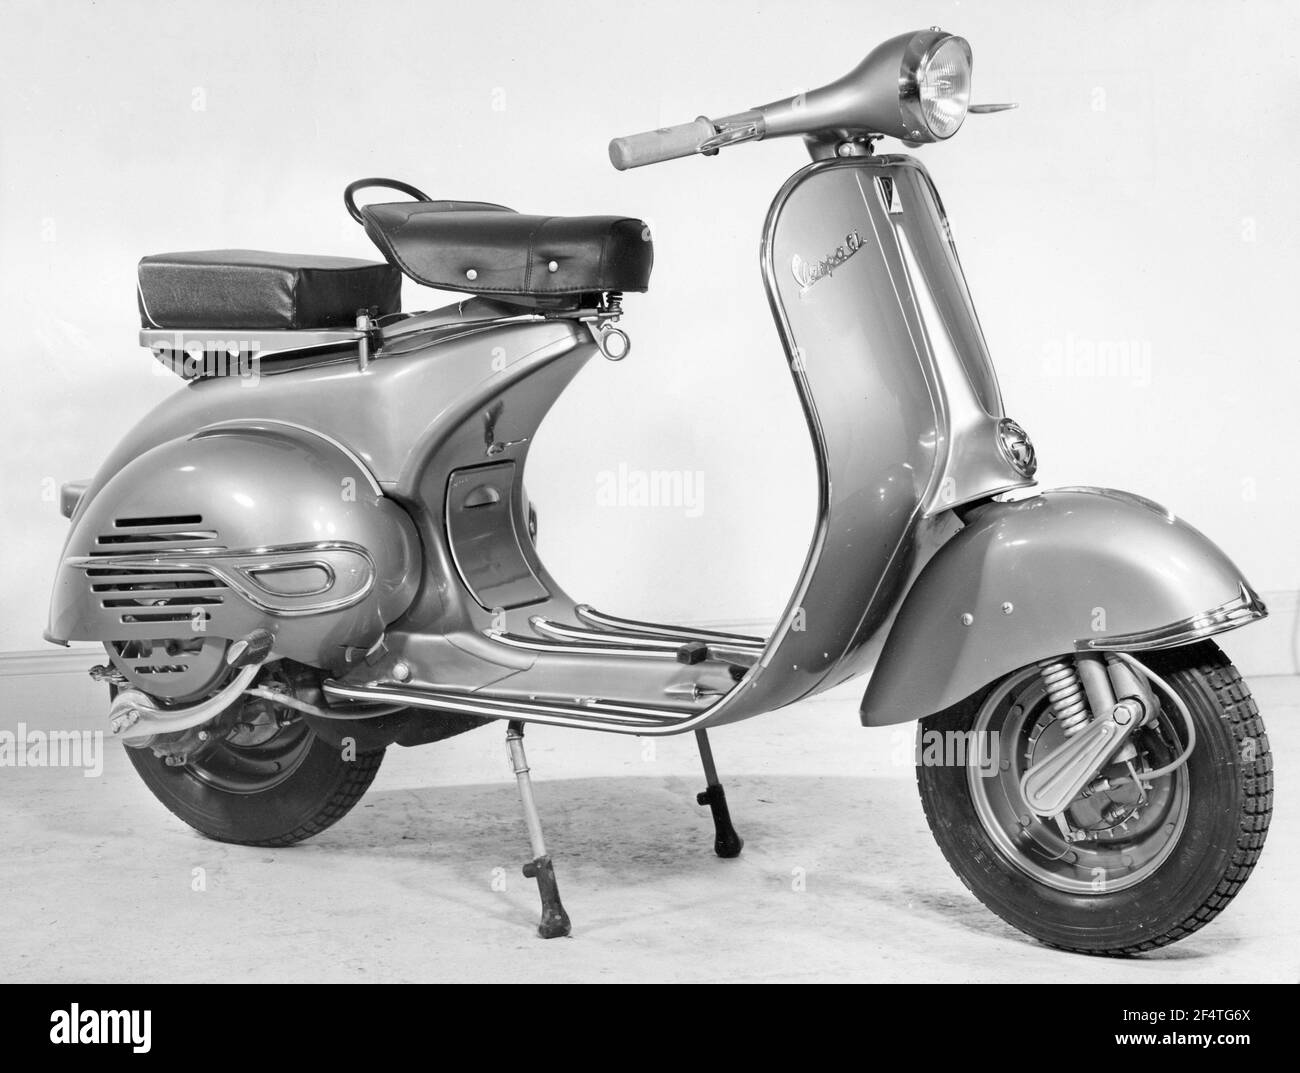 Vespa. Une marque italienne de scooter fabriqué par Piaggio. Le 23 avril 1946, Piaggio & C. S.p.A. a déposé un brevet pour "un cycle moteur avec un complexe rationnel d'organes et d'éléments avec corps combiné avec les garde-boue et le capot couvrant toutes les pièces mécaniques". Peu de temps après, la Vespa a fait sa première apparition publique. 1958 Banque D'Images